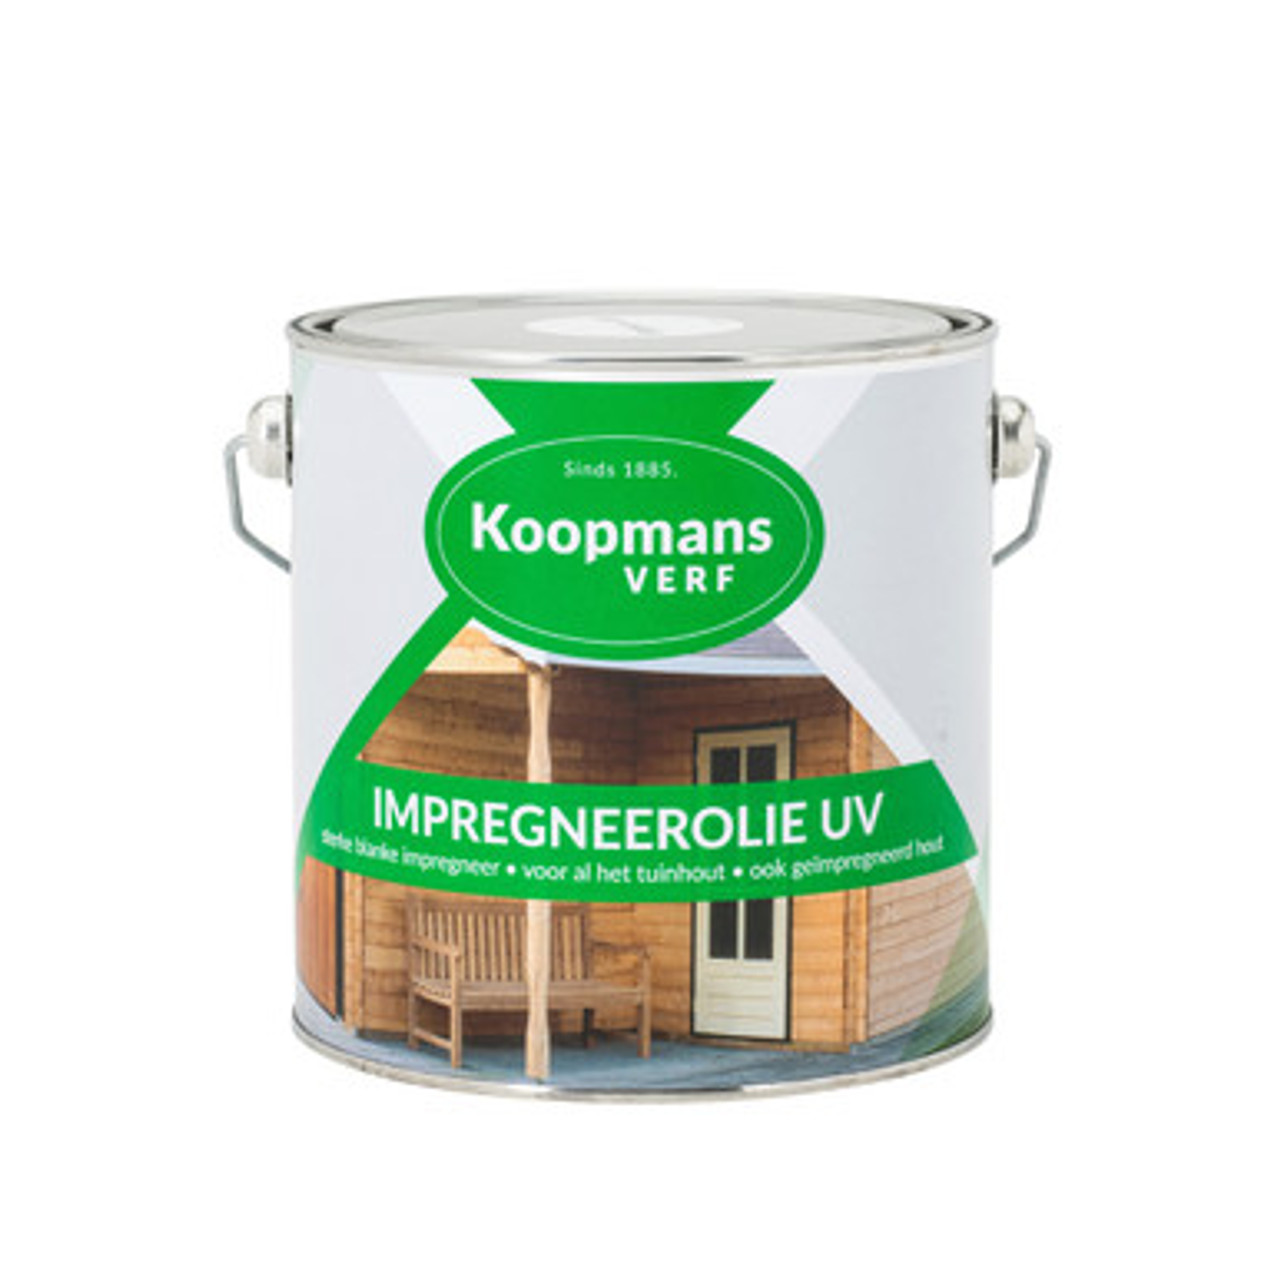 Wetenschap De vreemdeling universiteitsstudent Koopmans Impregneerolie UV | Bescherm al jouw (Tuin)hout | Onlineverf.nl